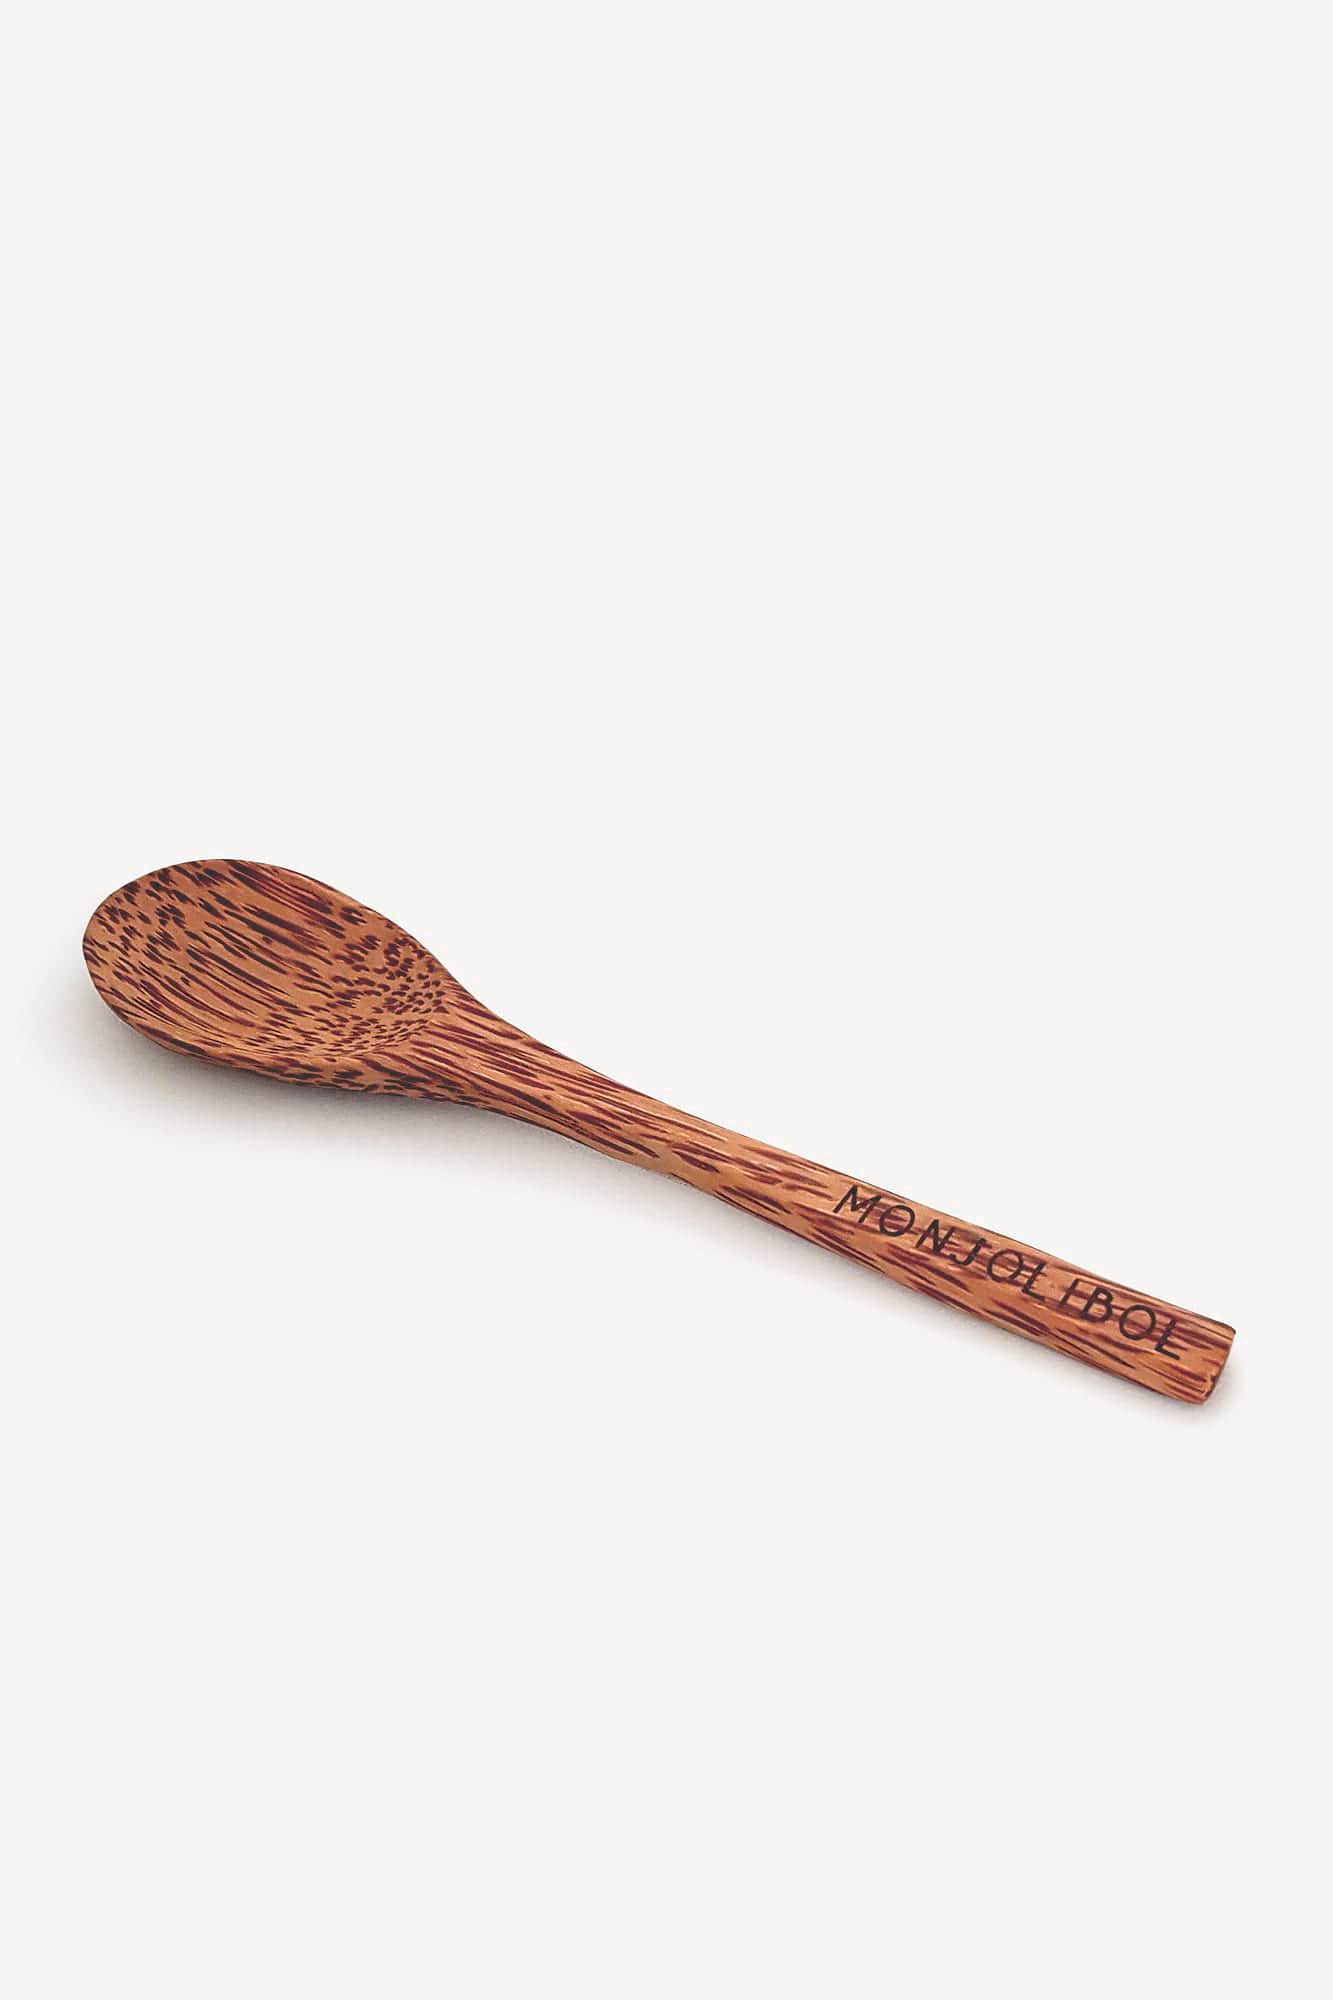 cuillère en bois de coco de la marque monjolibol